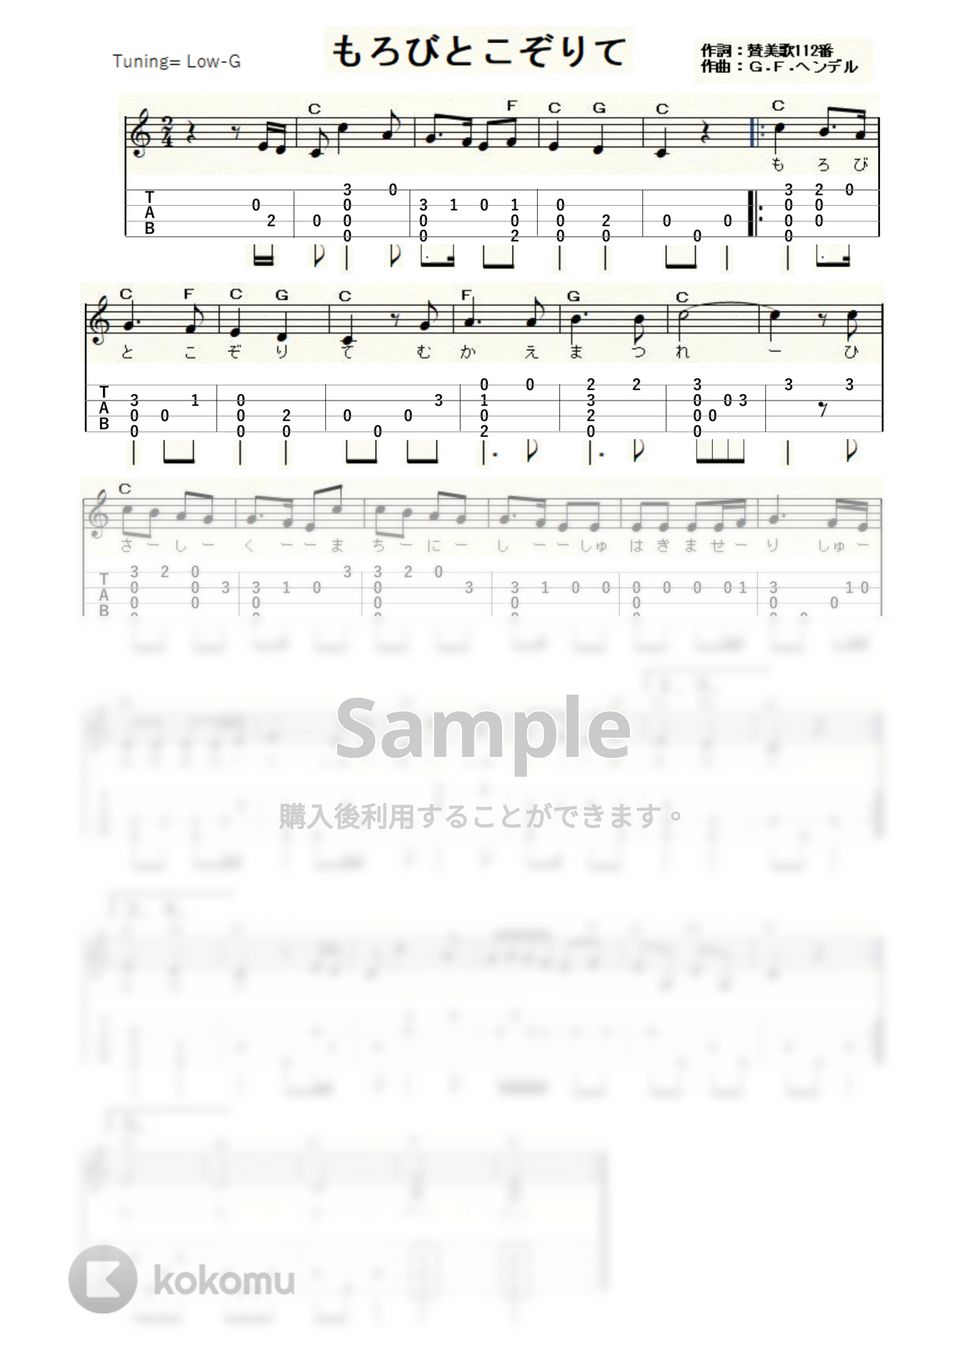 もろびとこぞりて (ｳｸﾚﾚｿﾛ / Low-G / 初級) by ukulelepapa